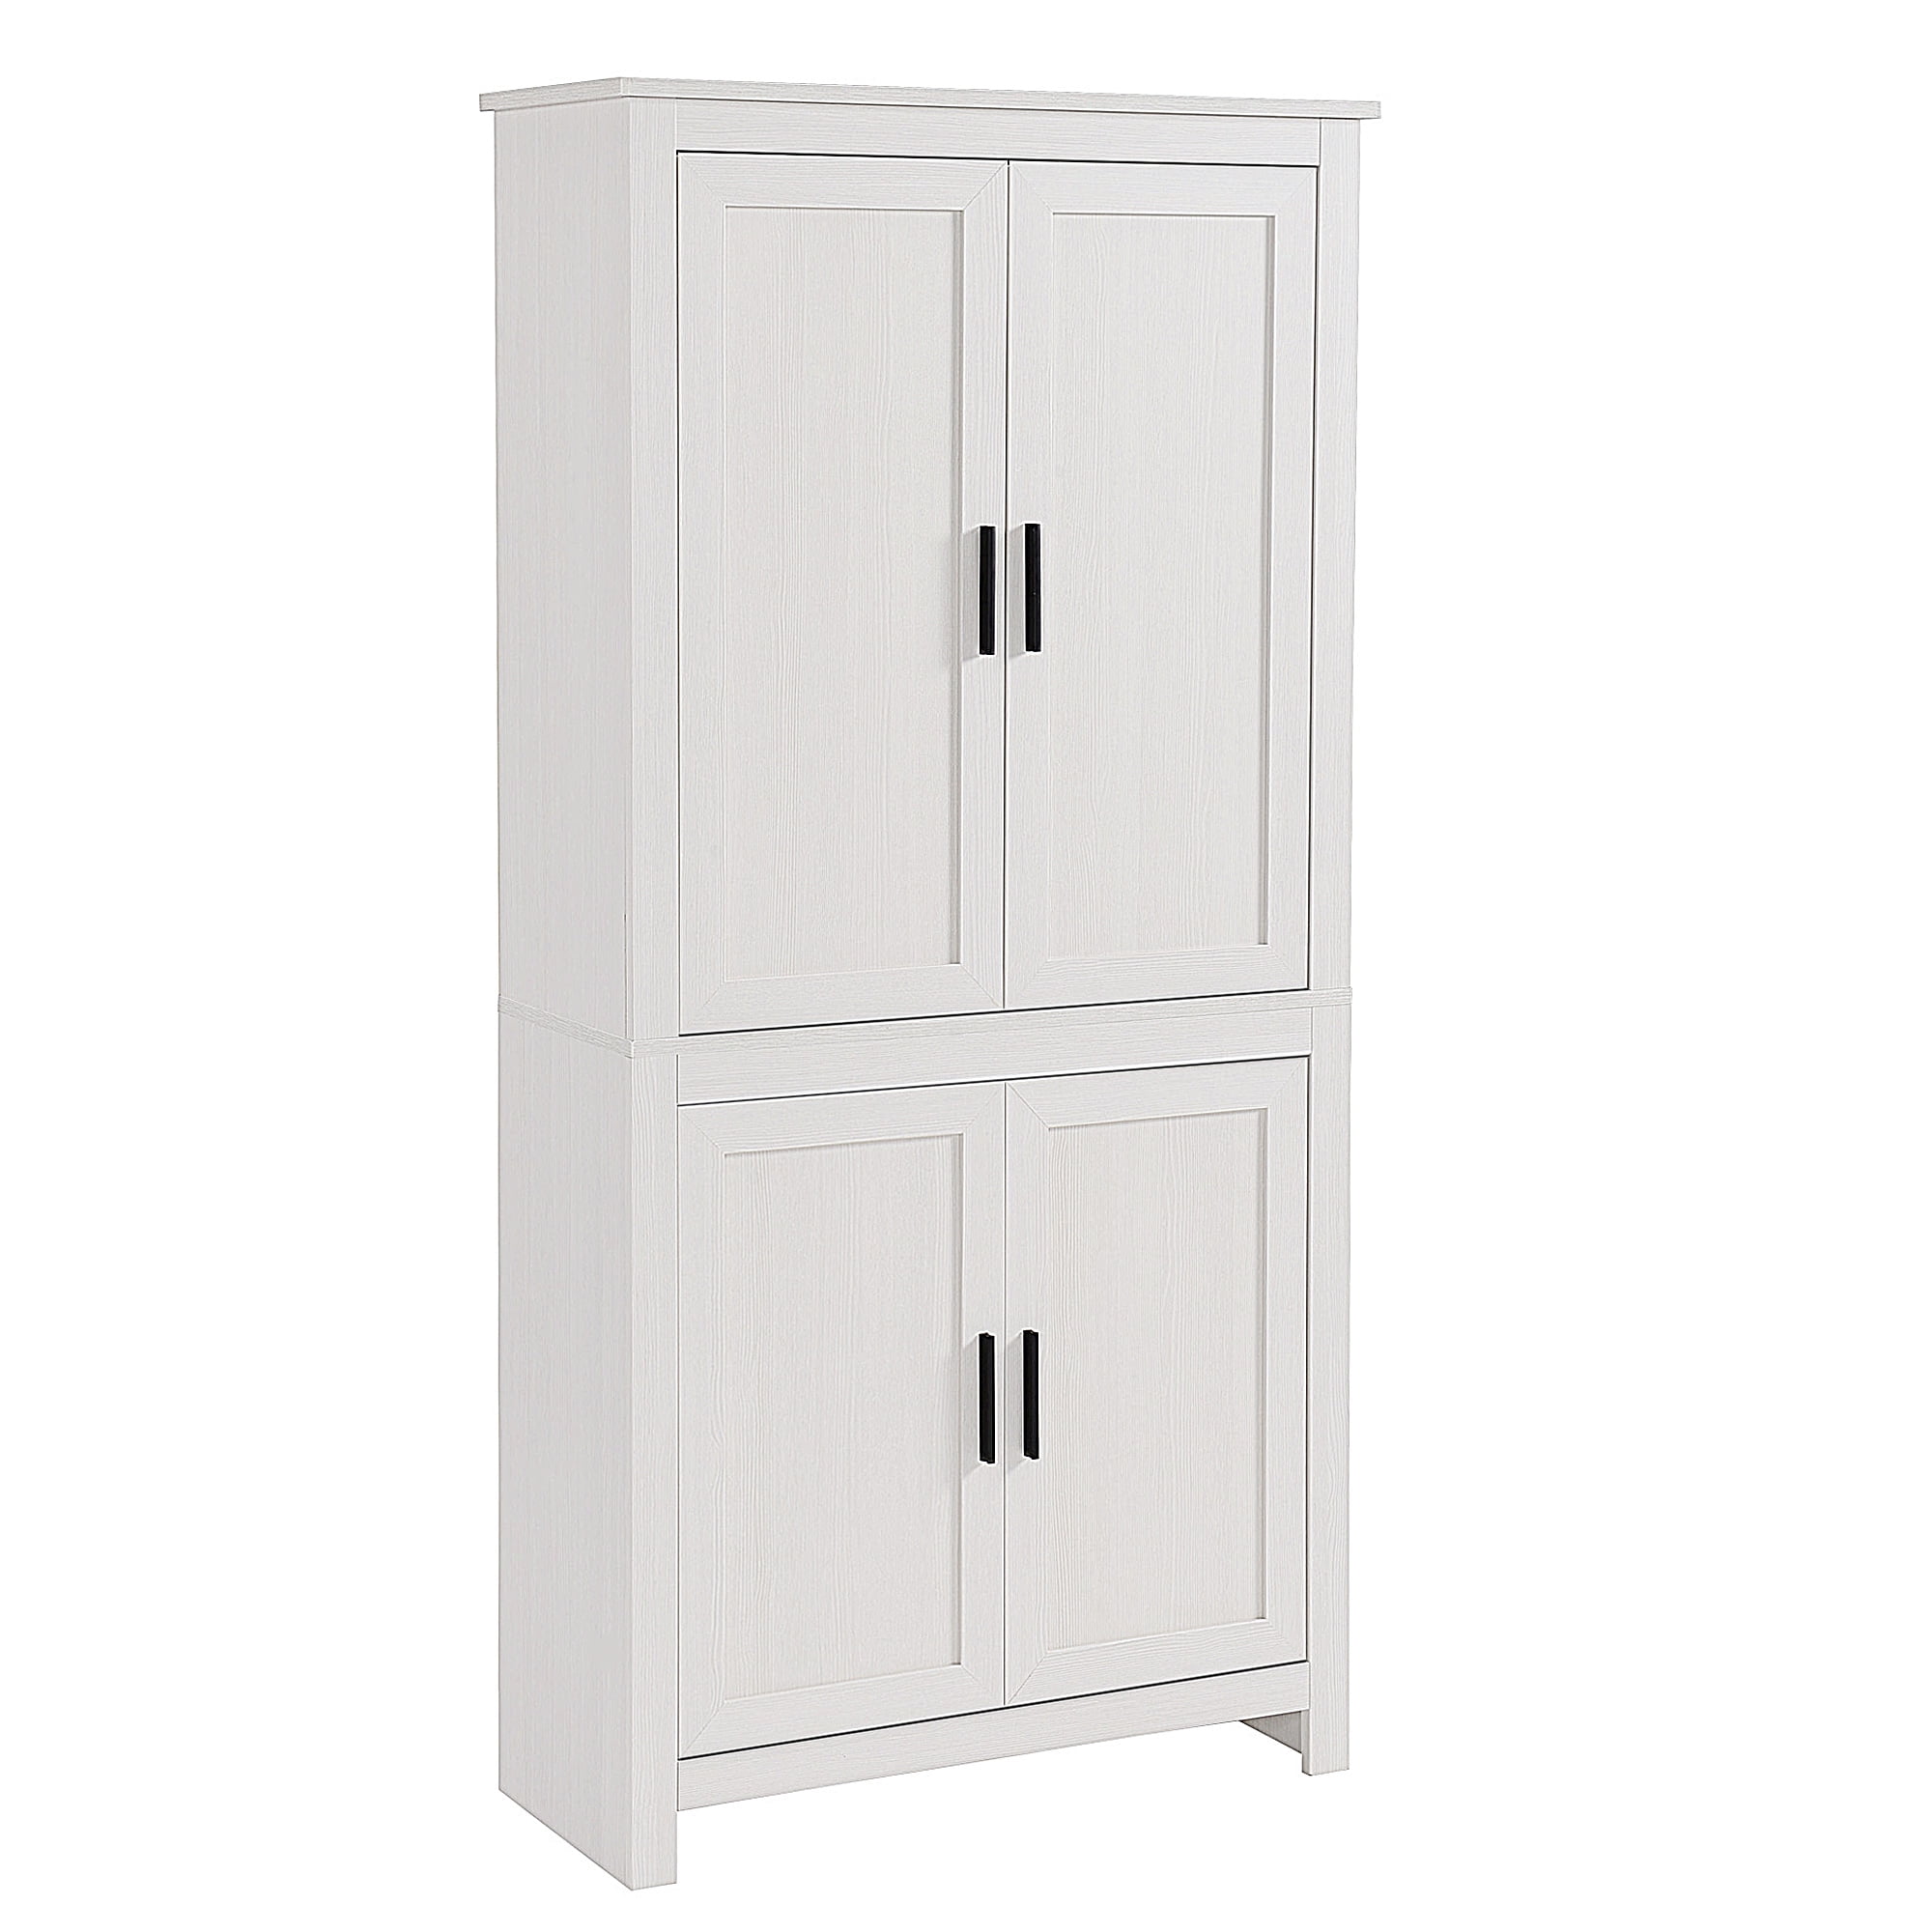 Kitchen Pantry Storage Cabinet 4 Door Wood Organizer Furniture Cupboard White 